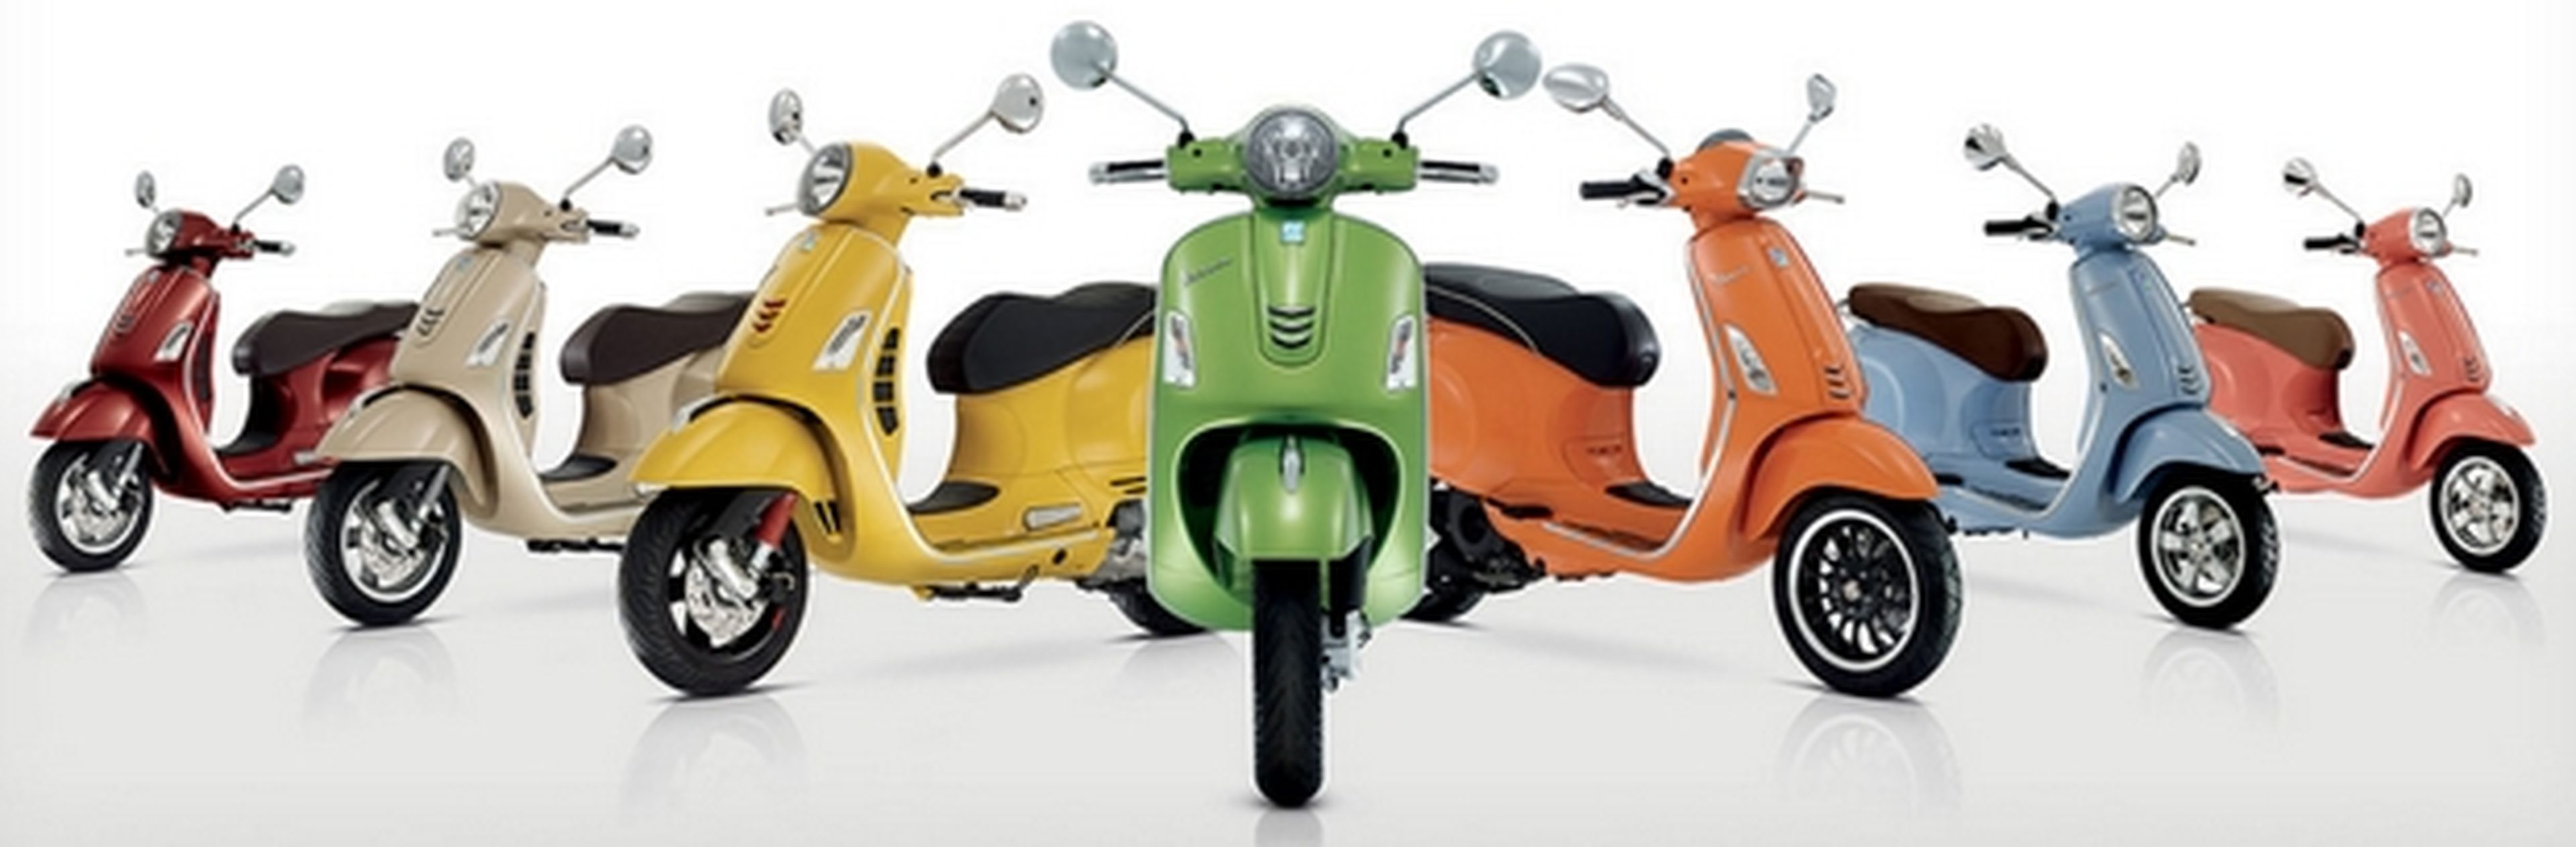 La mítica moto Vespa regresa en versión eléctrica